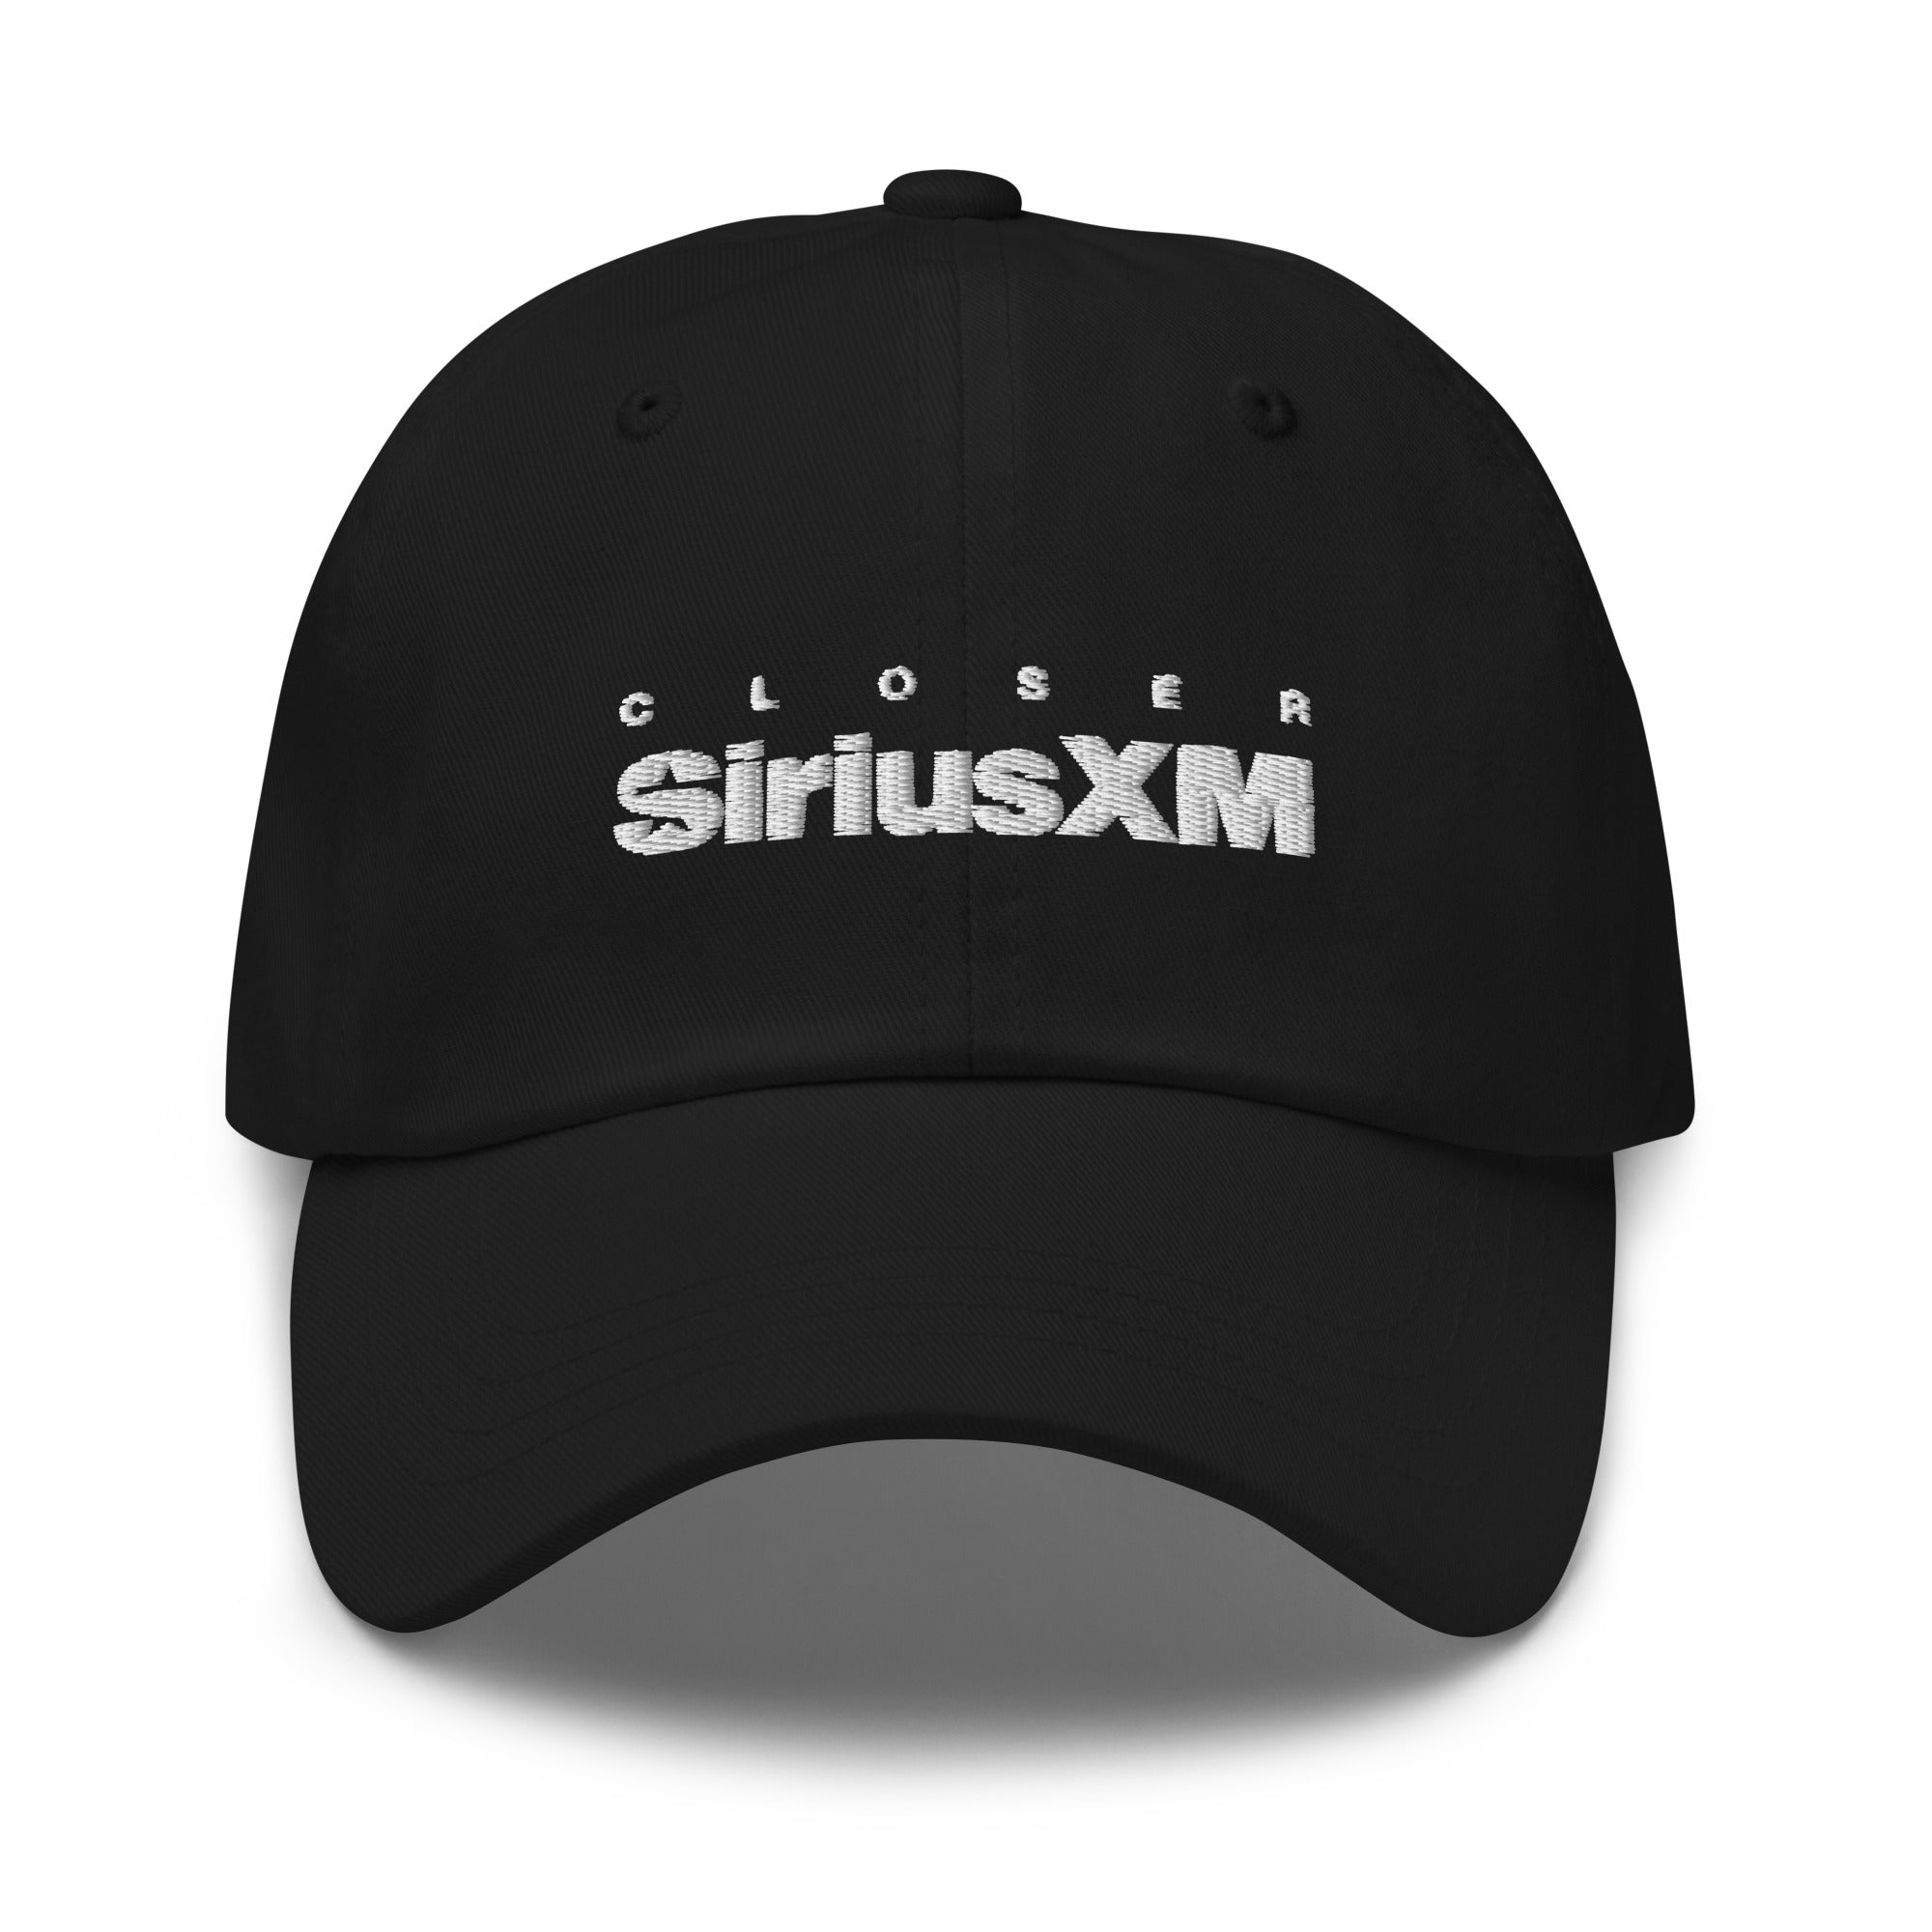 SiriusXM Closer: Black Cap